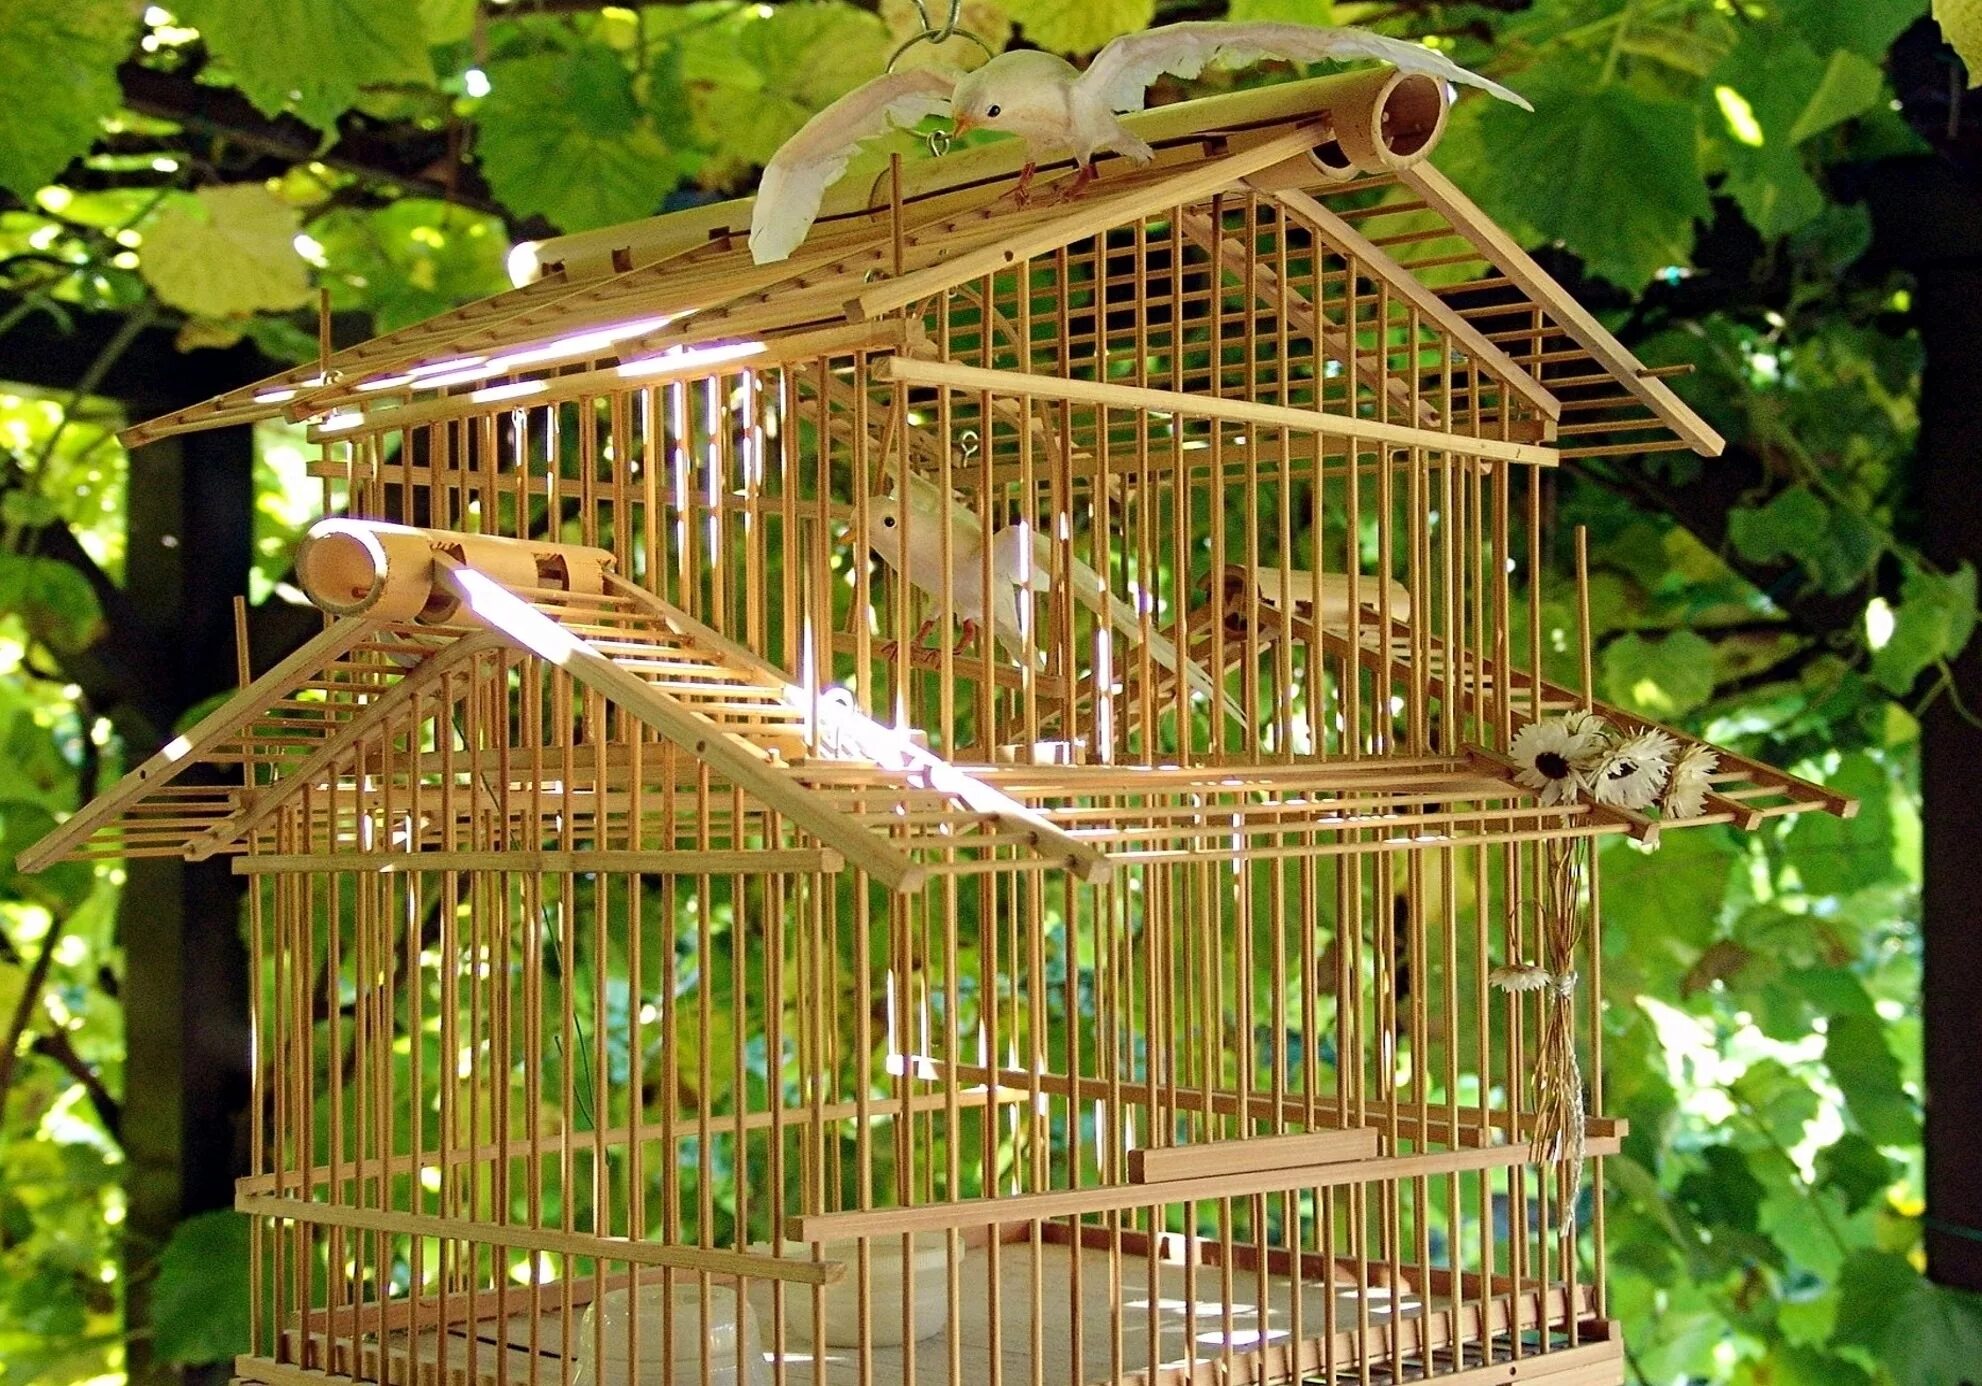 Бенилюкс клетка деревянная Wooden rearing Cage для птиц, 60*30*40 см,. Домик для птиц в клетку. Птица деревянные дома